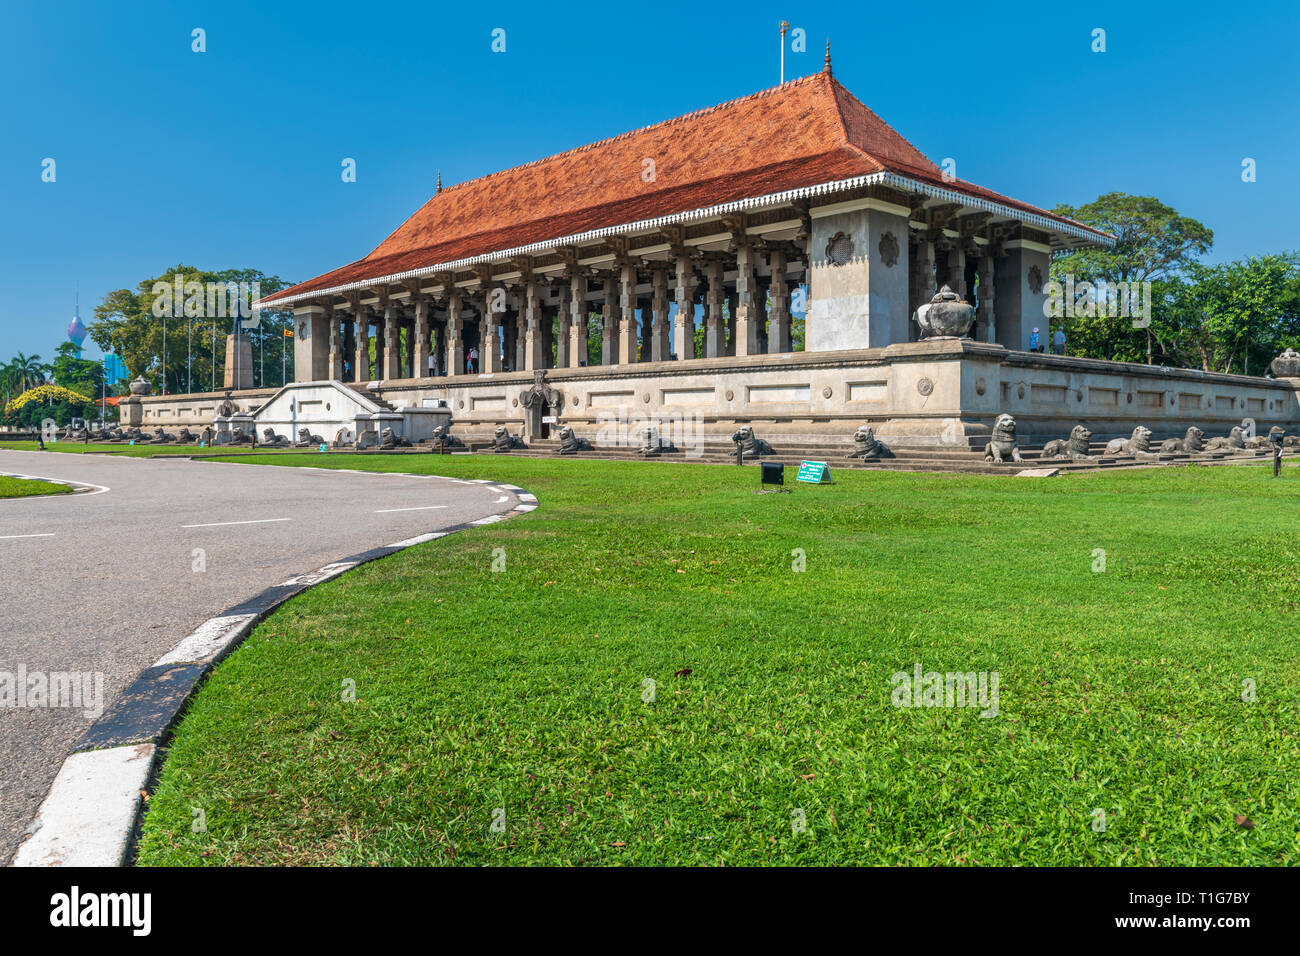 L'indépendance Memorial Hall est un monument national situé au cœur de jardins de cannelle à Colombo, Sri Lanka. Banque D'Images